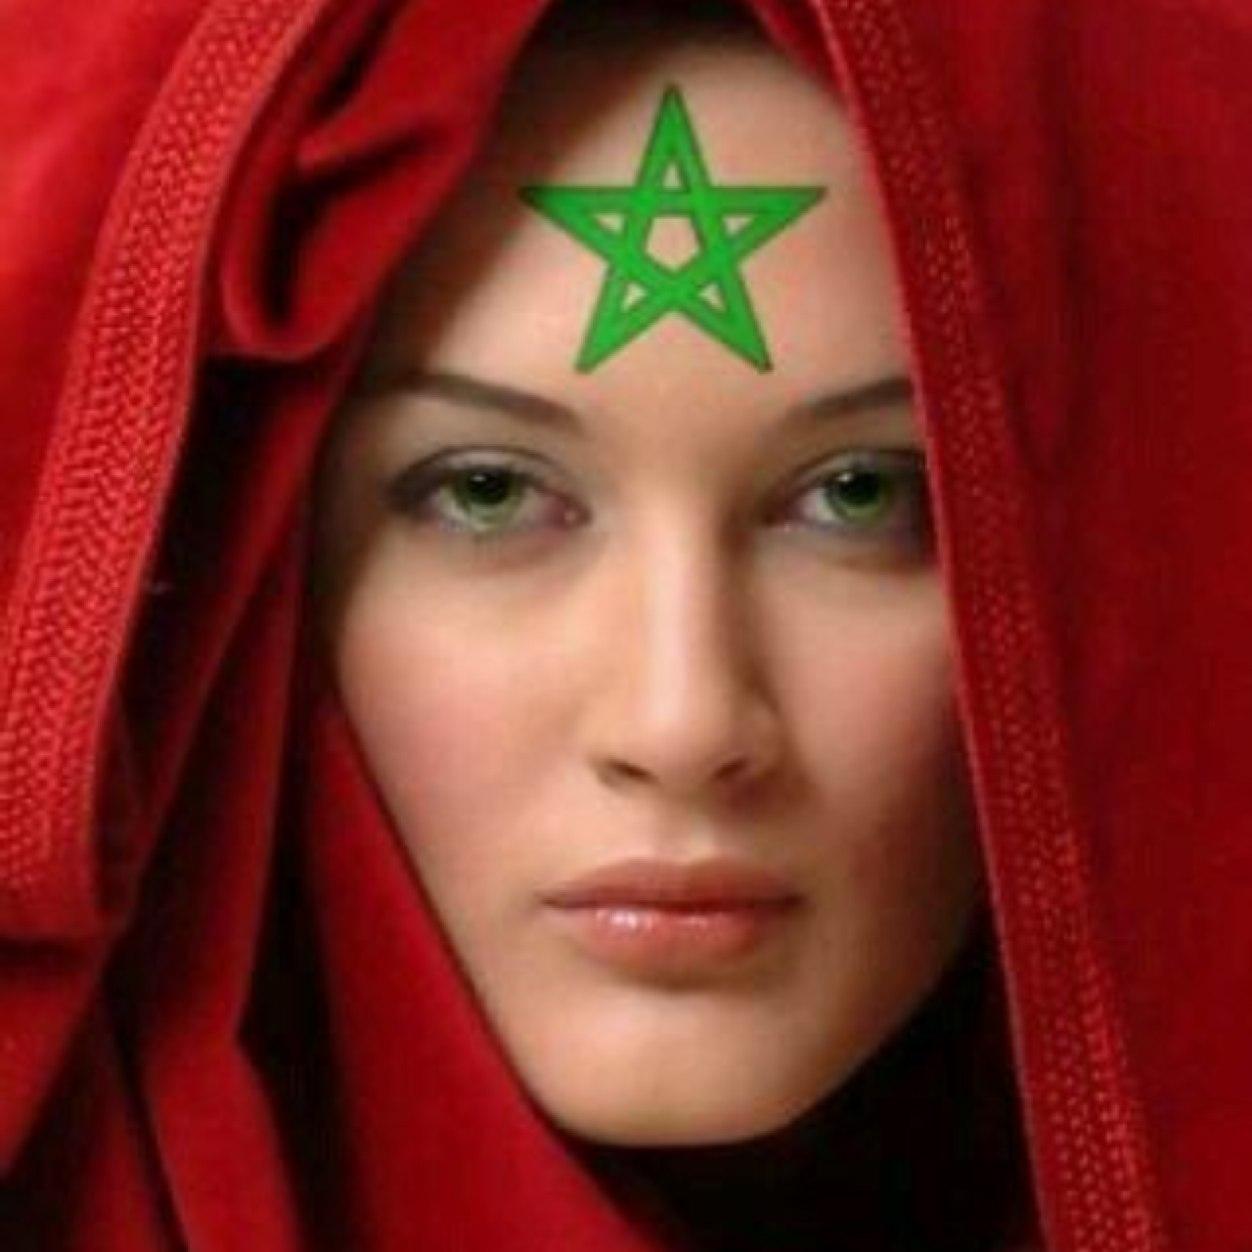 220 بنات المغرب - افضل بنات العرب سلطانة جسار